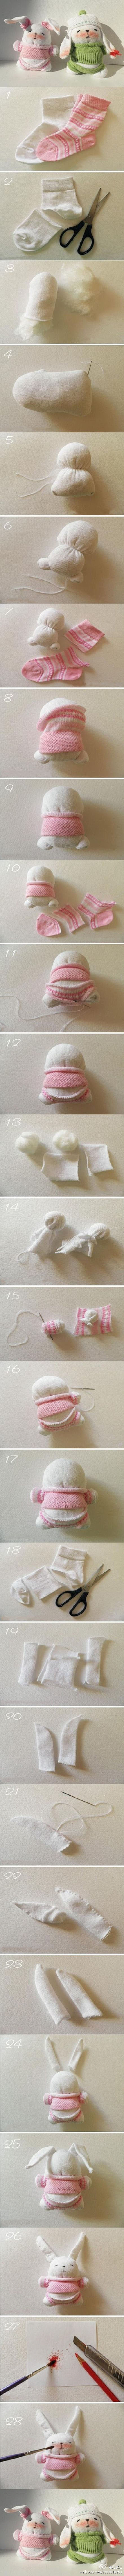 【DIY手工】小袜子就能制成的可爱小兔子...